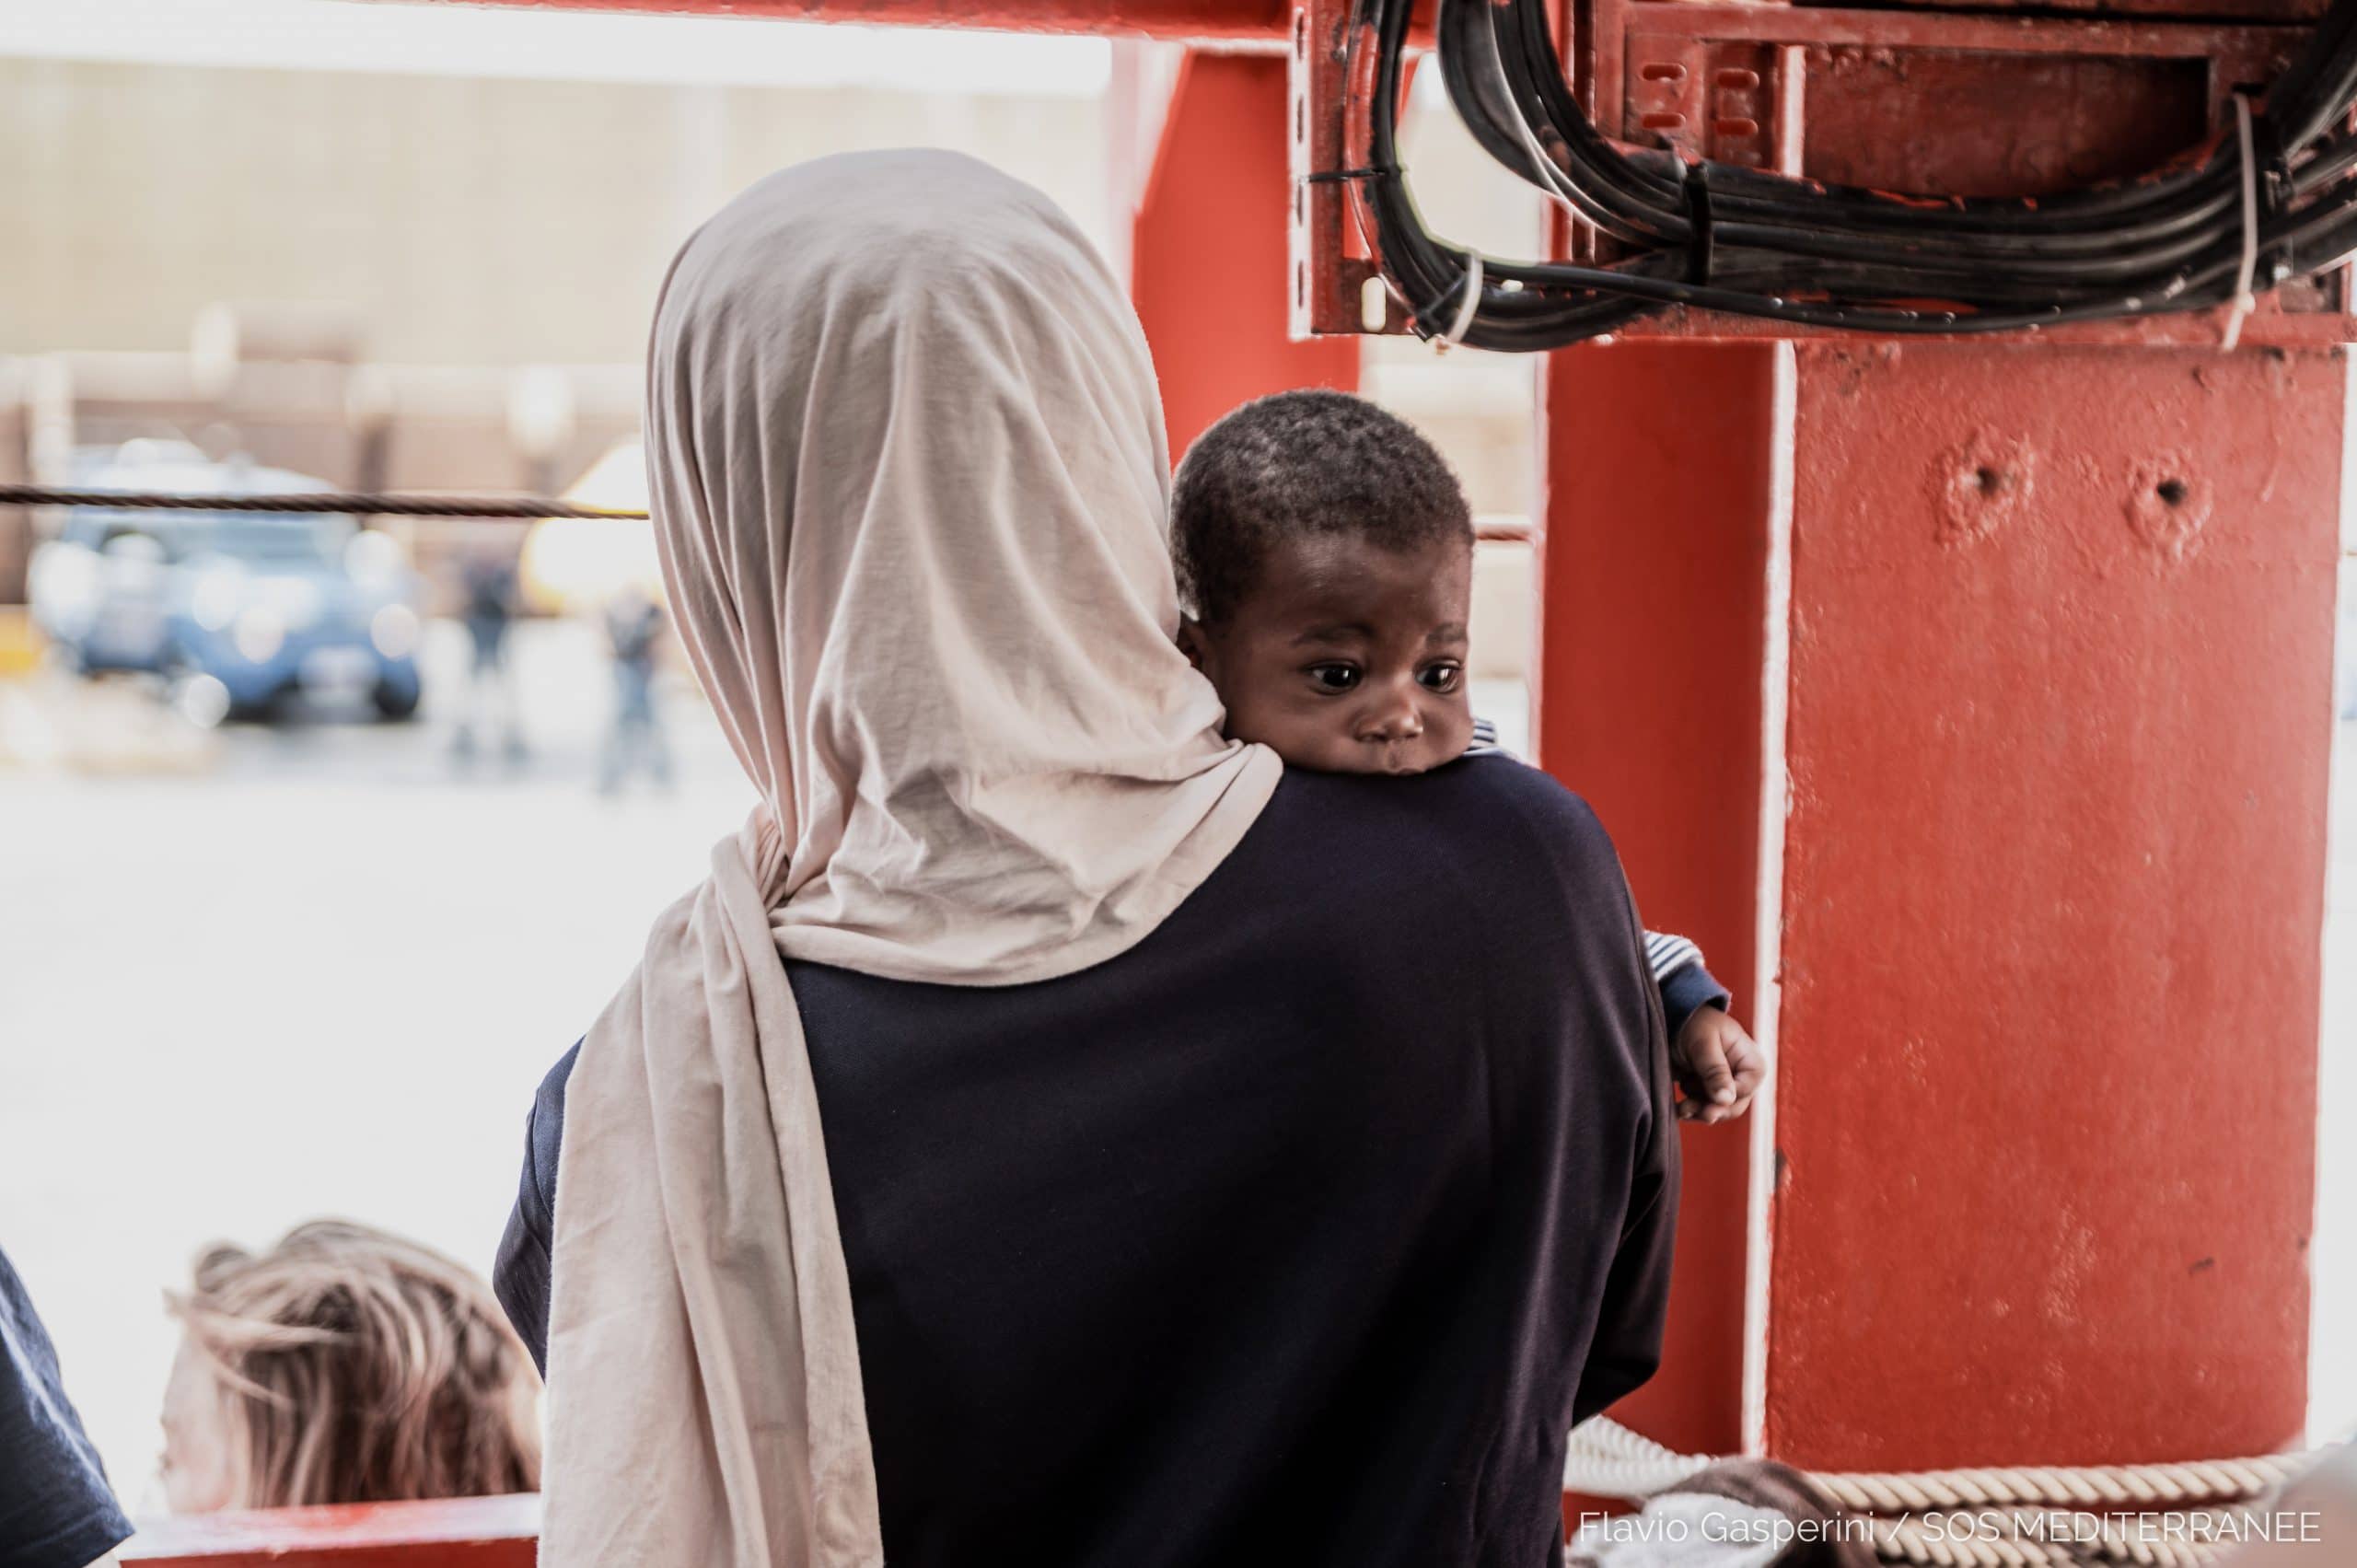 [TÉMOIGNAGE] « Ils me frappaient alors que j’étais enceinte », Fatima*, rescapée à bord de l’Ocean Viking SOS Méditerranée